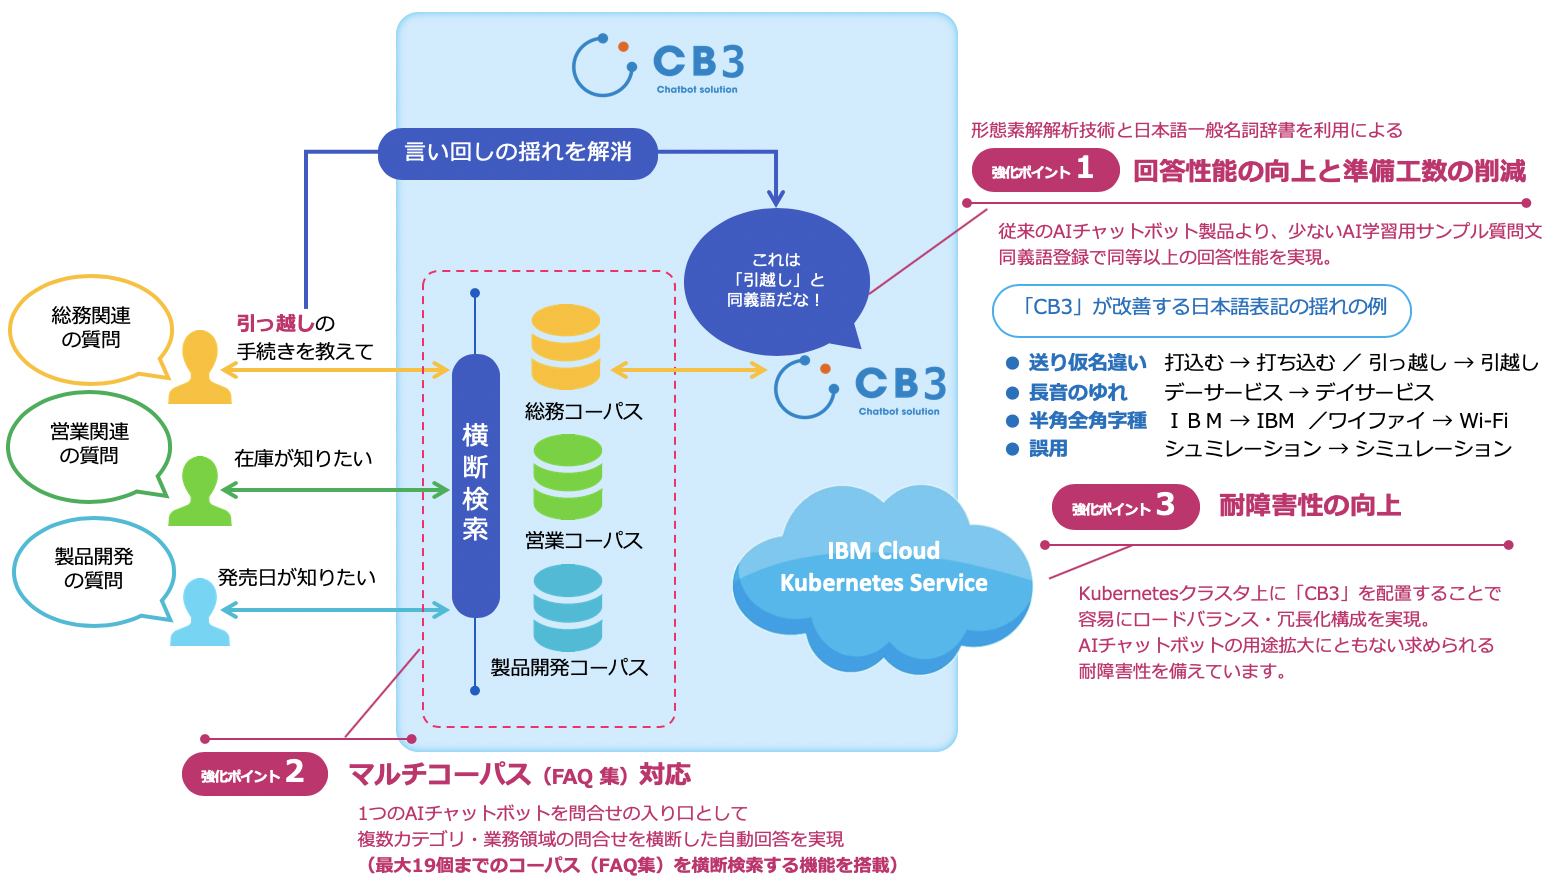 CB3の機能強化点を１つにまとめたイメージ図